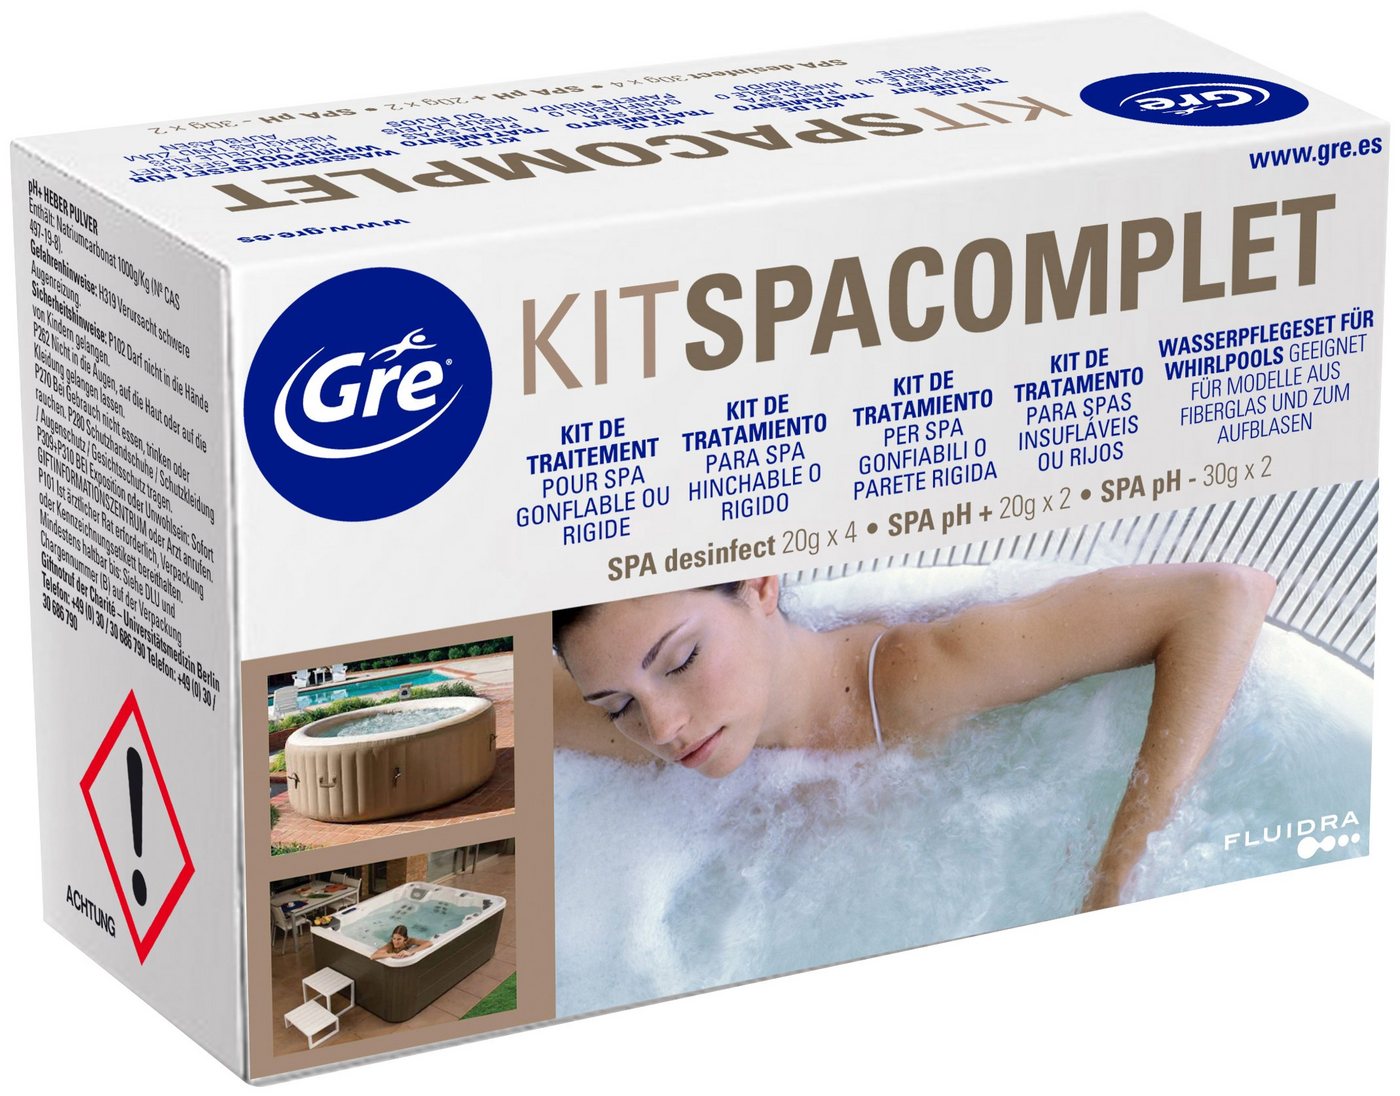 Gre Poolpflege Kit Spacomplet KTSPAG, Wasserpflege für Whirpools von Gre